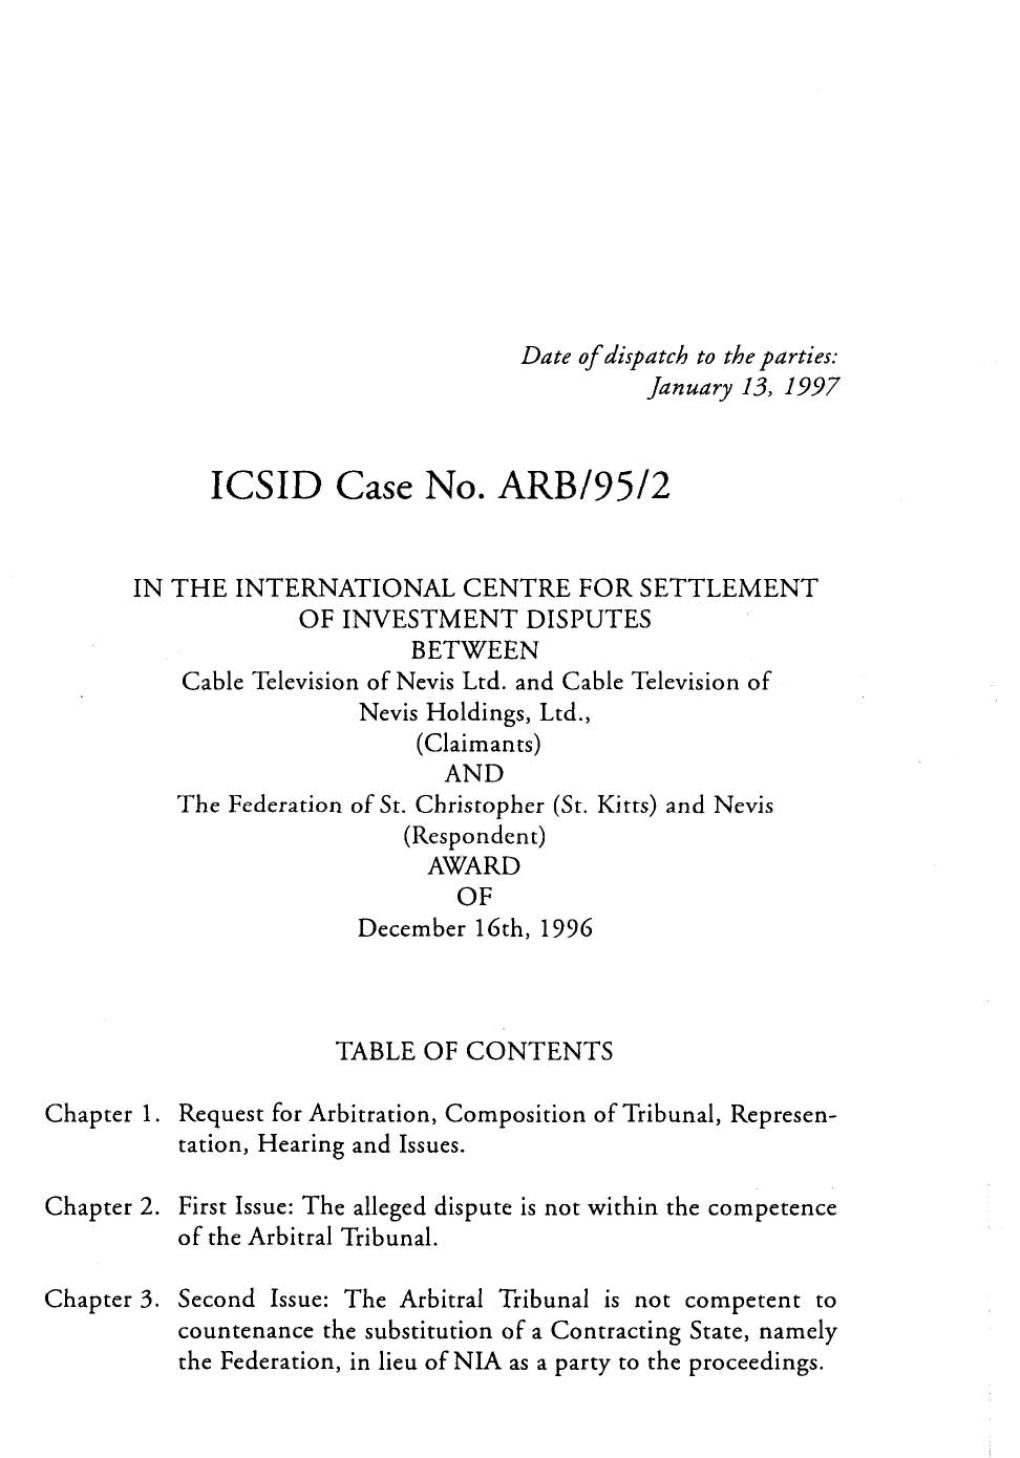 ICSID Case No. ARB/95/2